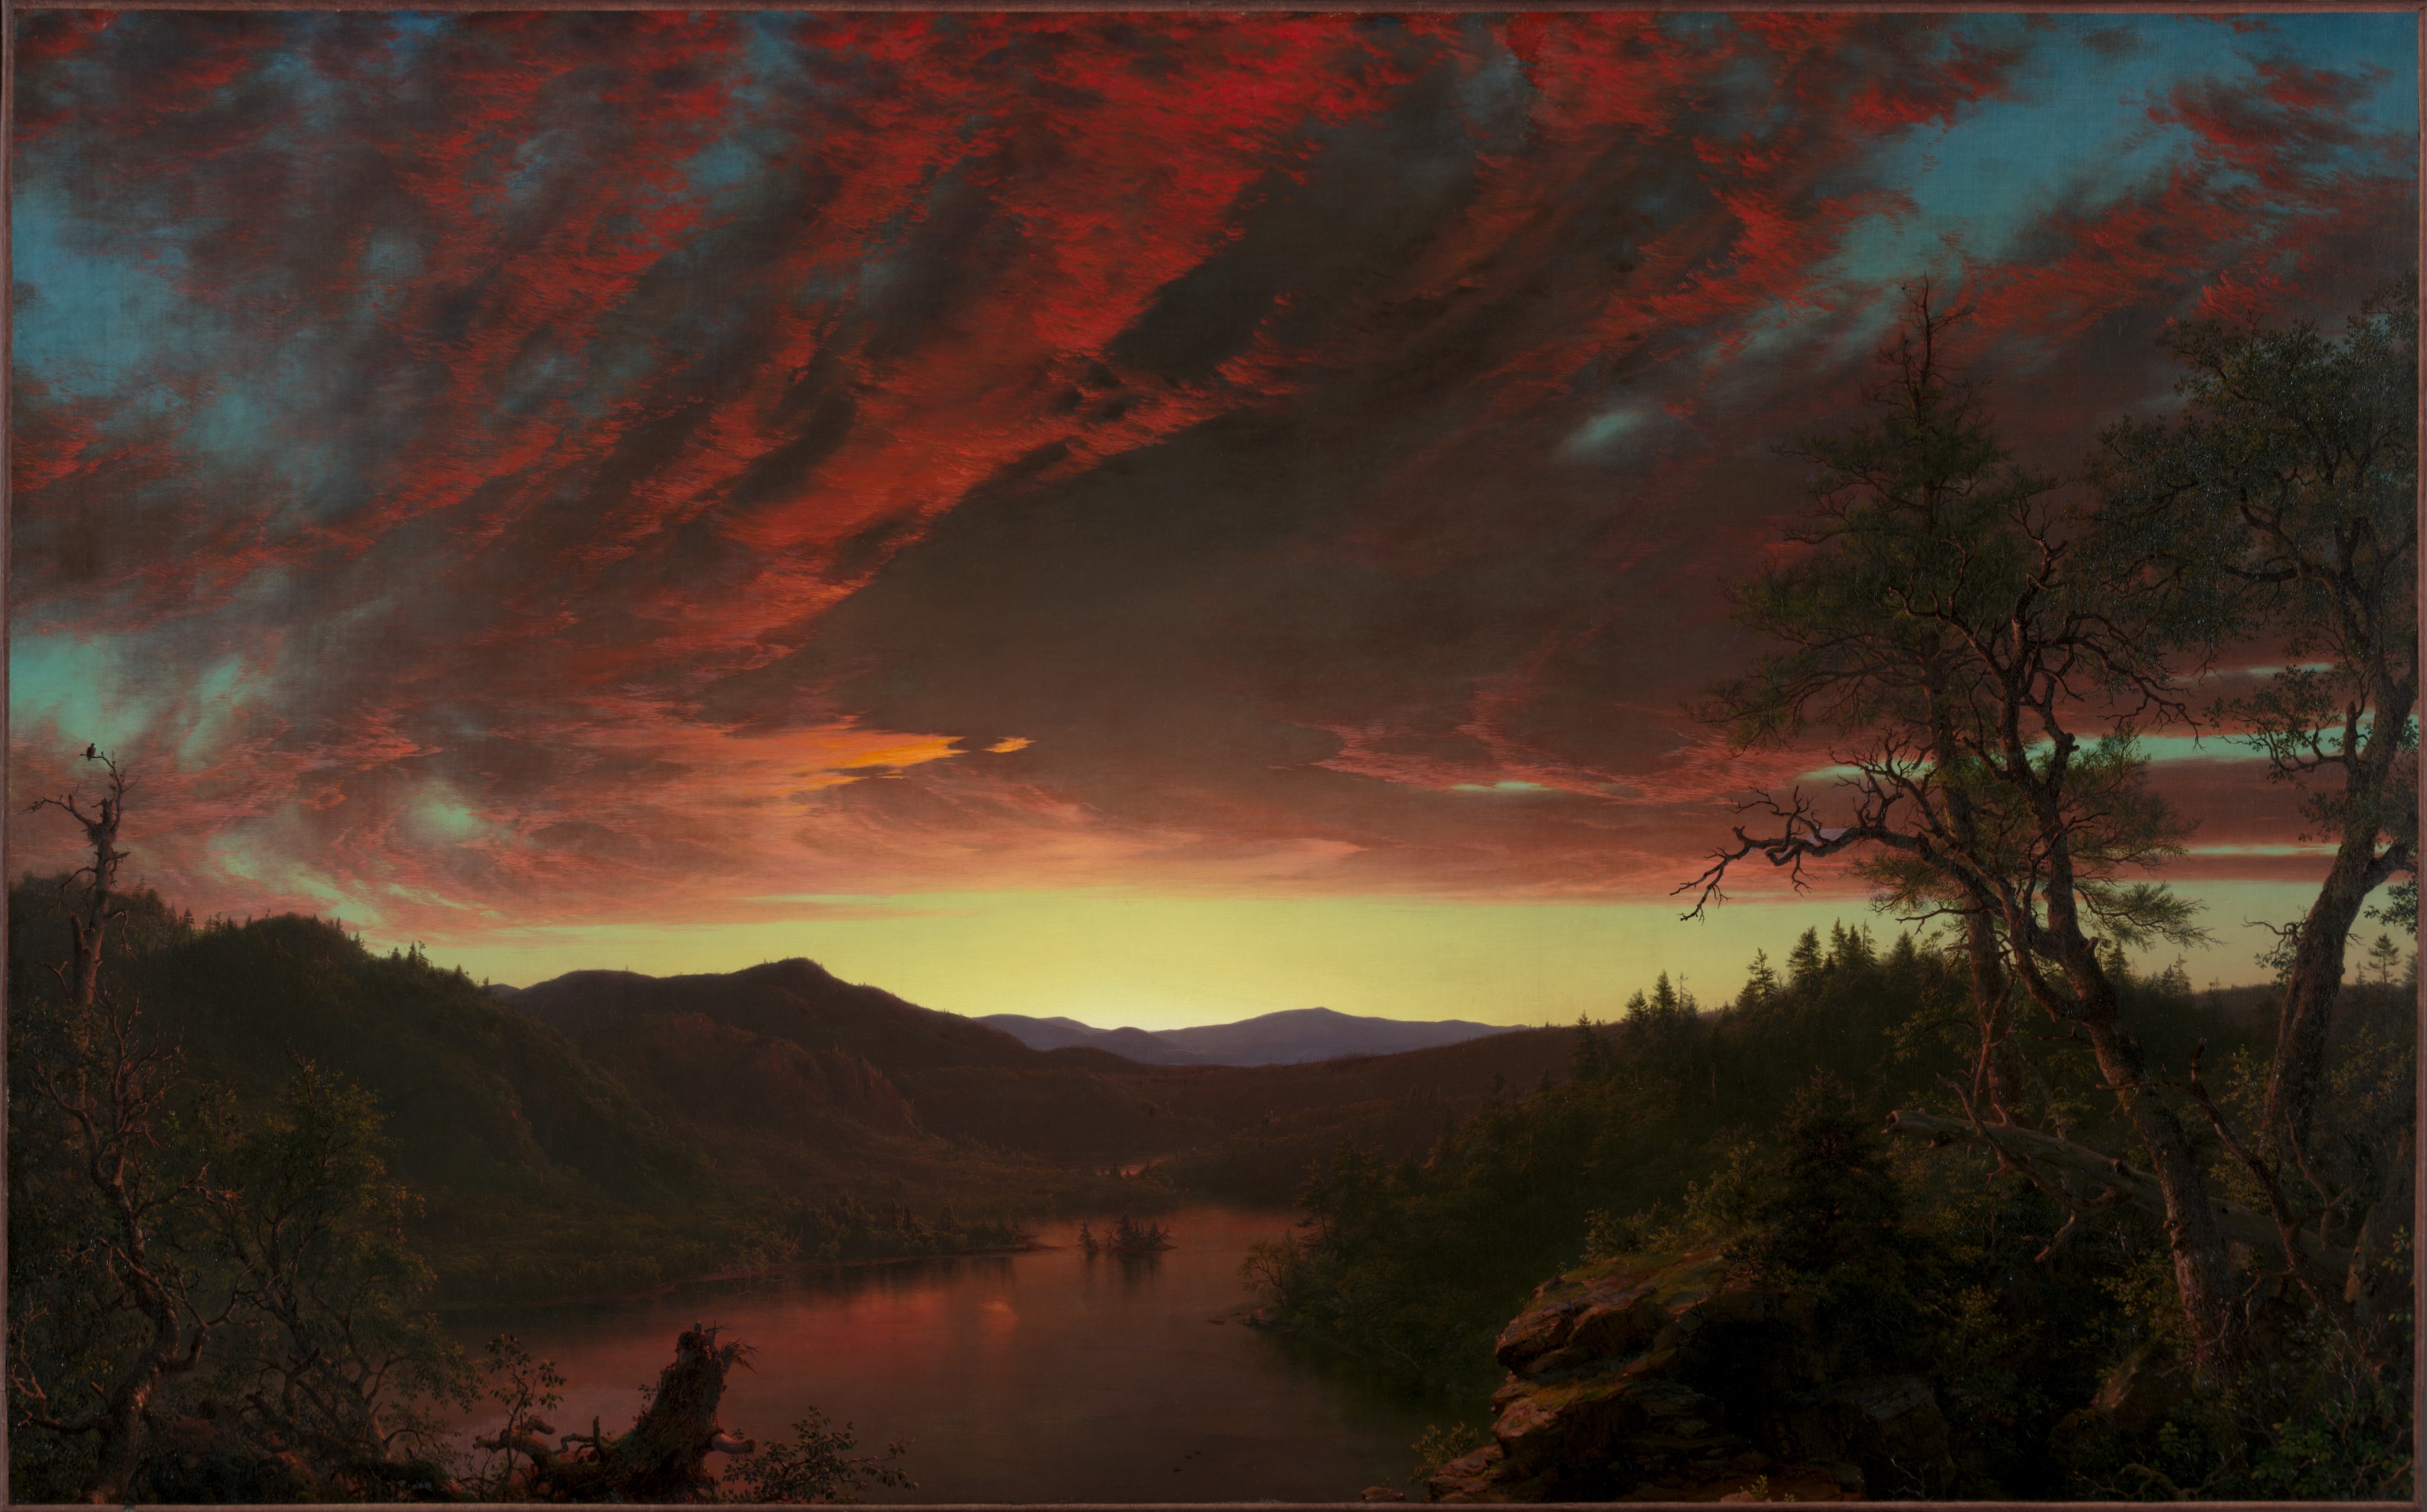 荒野的黄昏 by 弗雷德里克 丘奇 - 1860 - 101.6 x 162.6 厘米 克利夫兰艺术博物馆